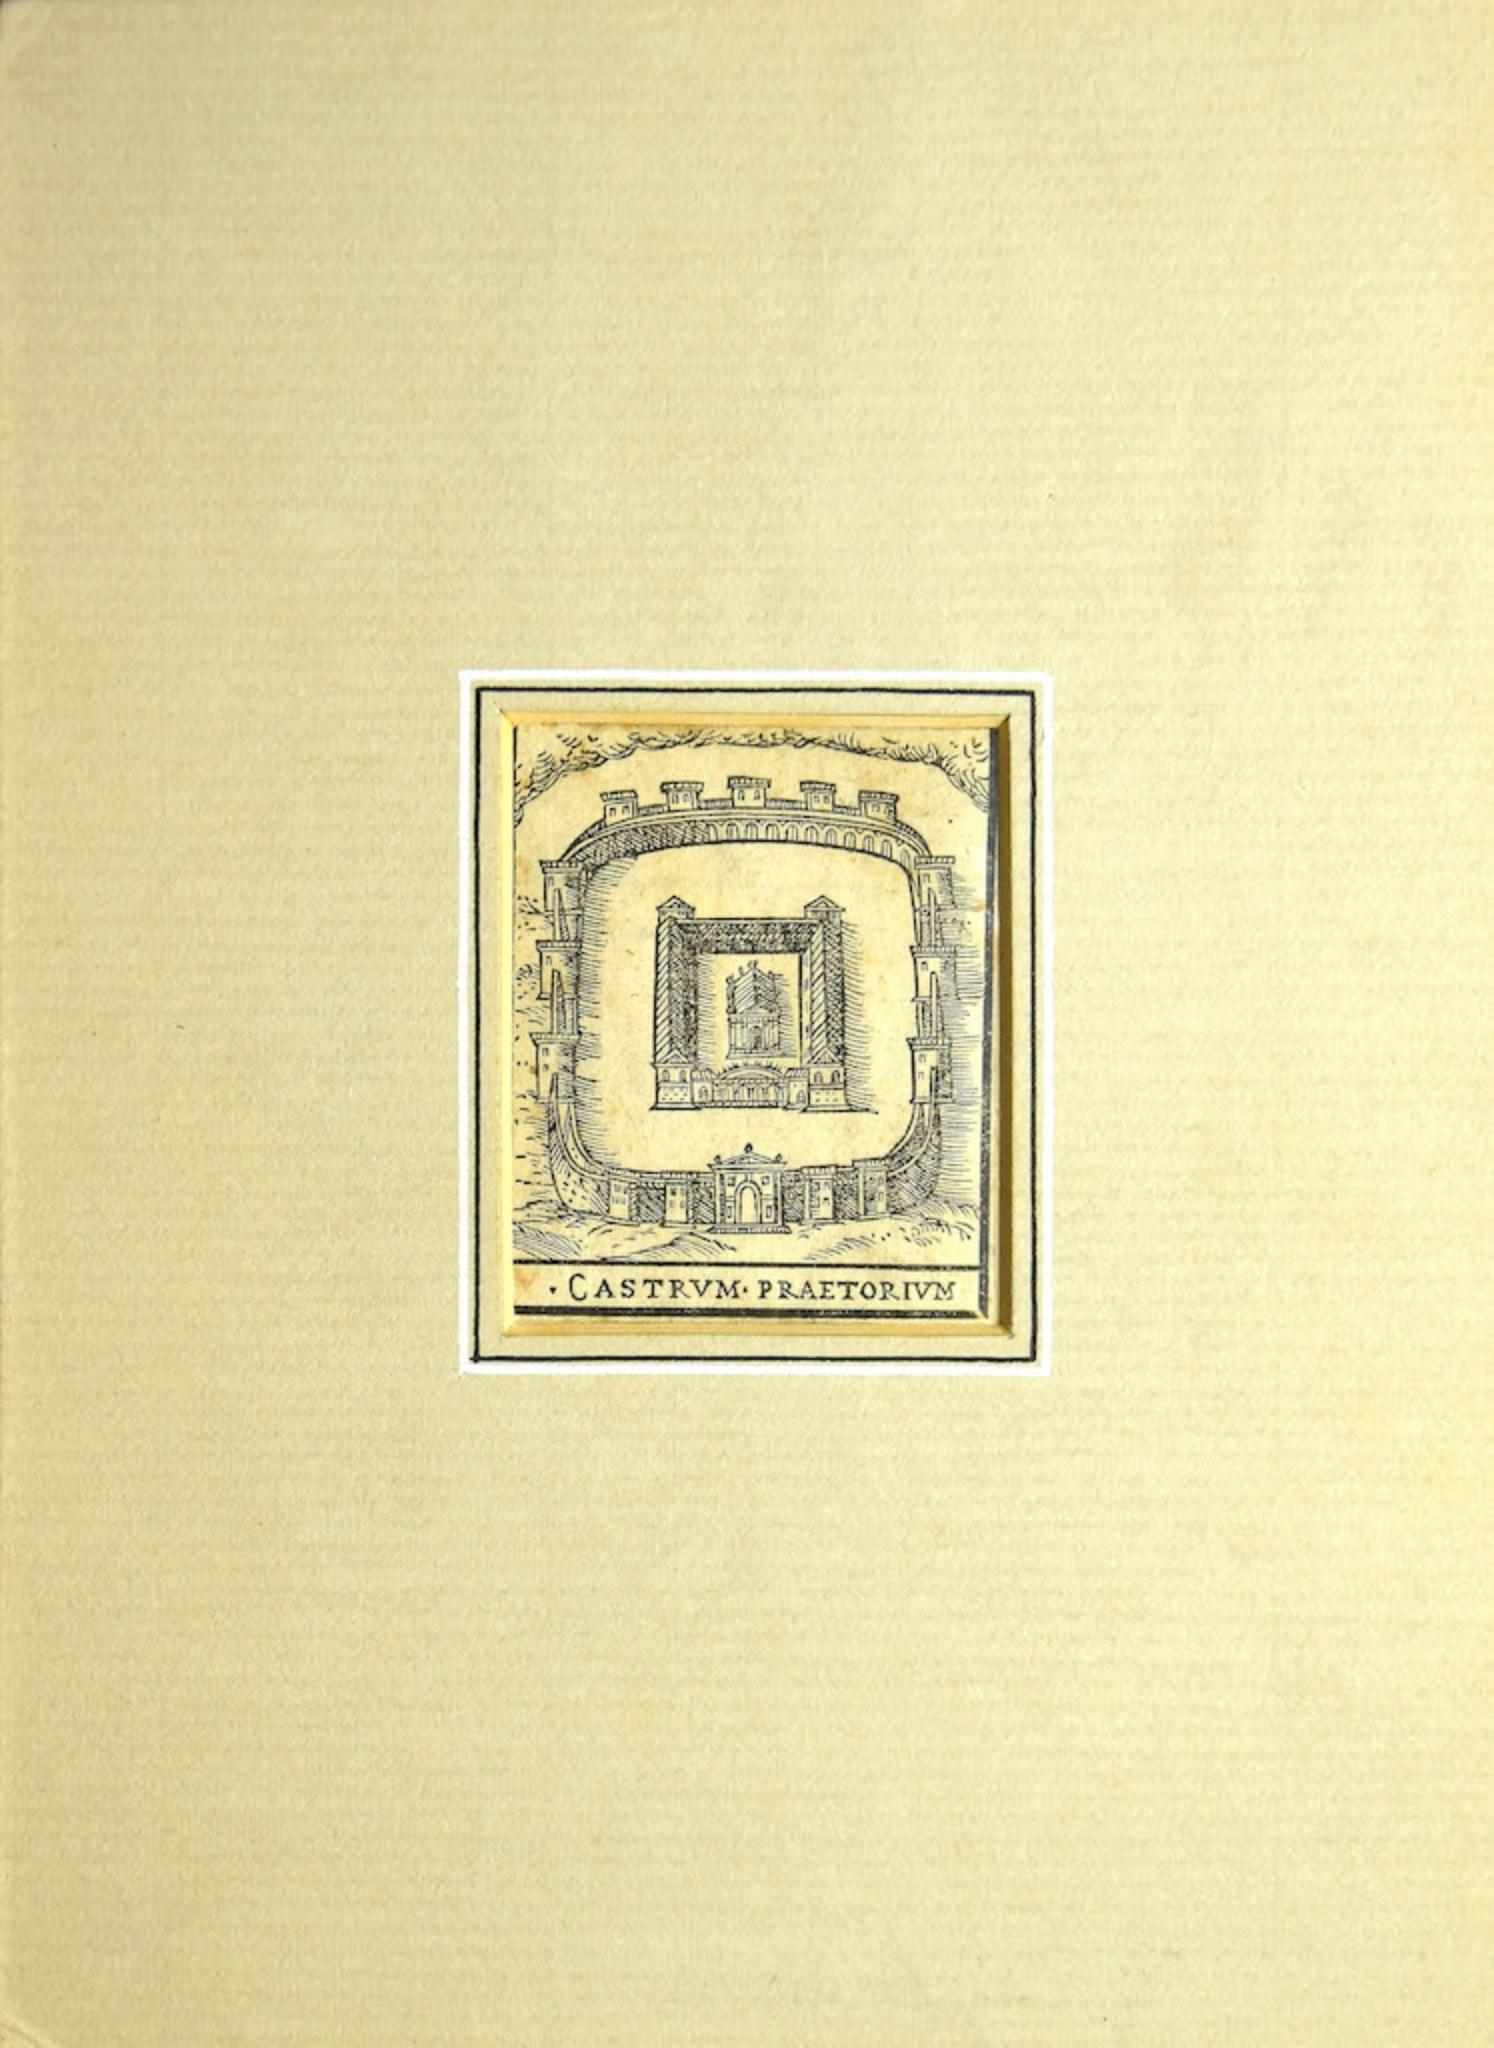 Rome, Castrum Praetorium - Original Etching  - 16th Century - Print by Unknown